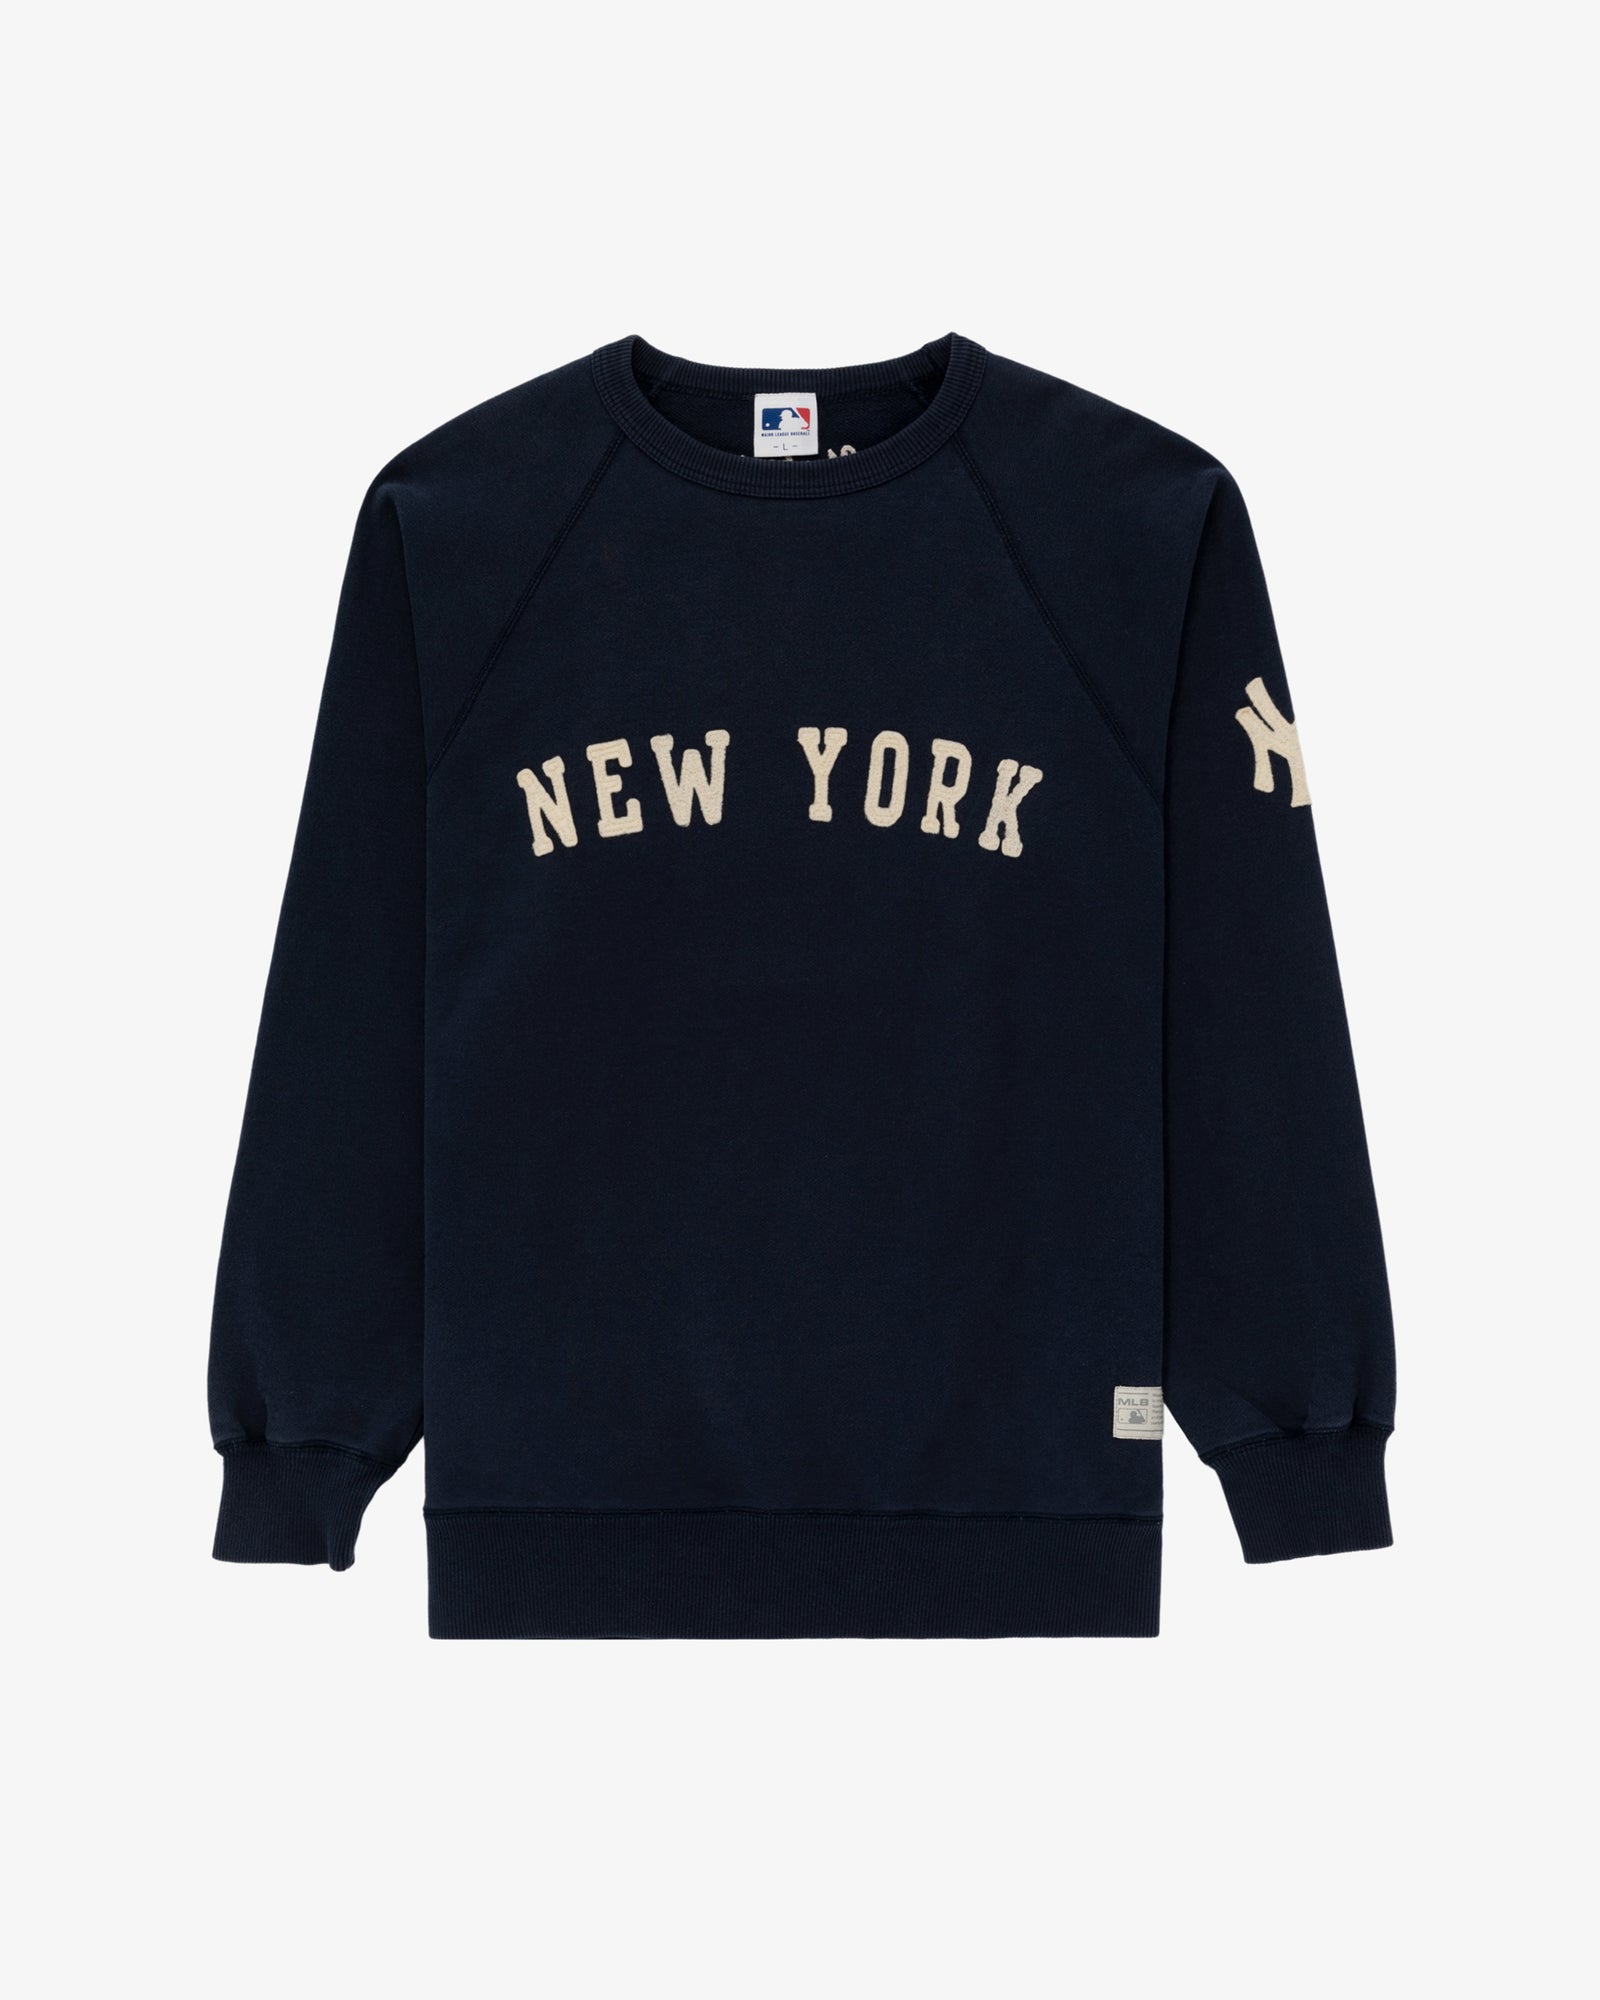 PICK Vintage New York Yankees Sweatshirt New York Yankees 